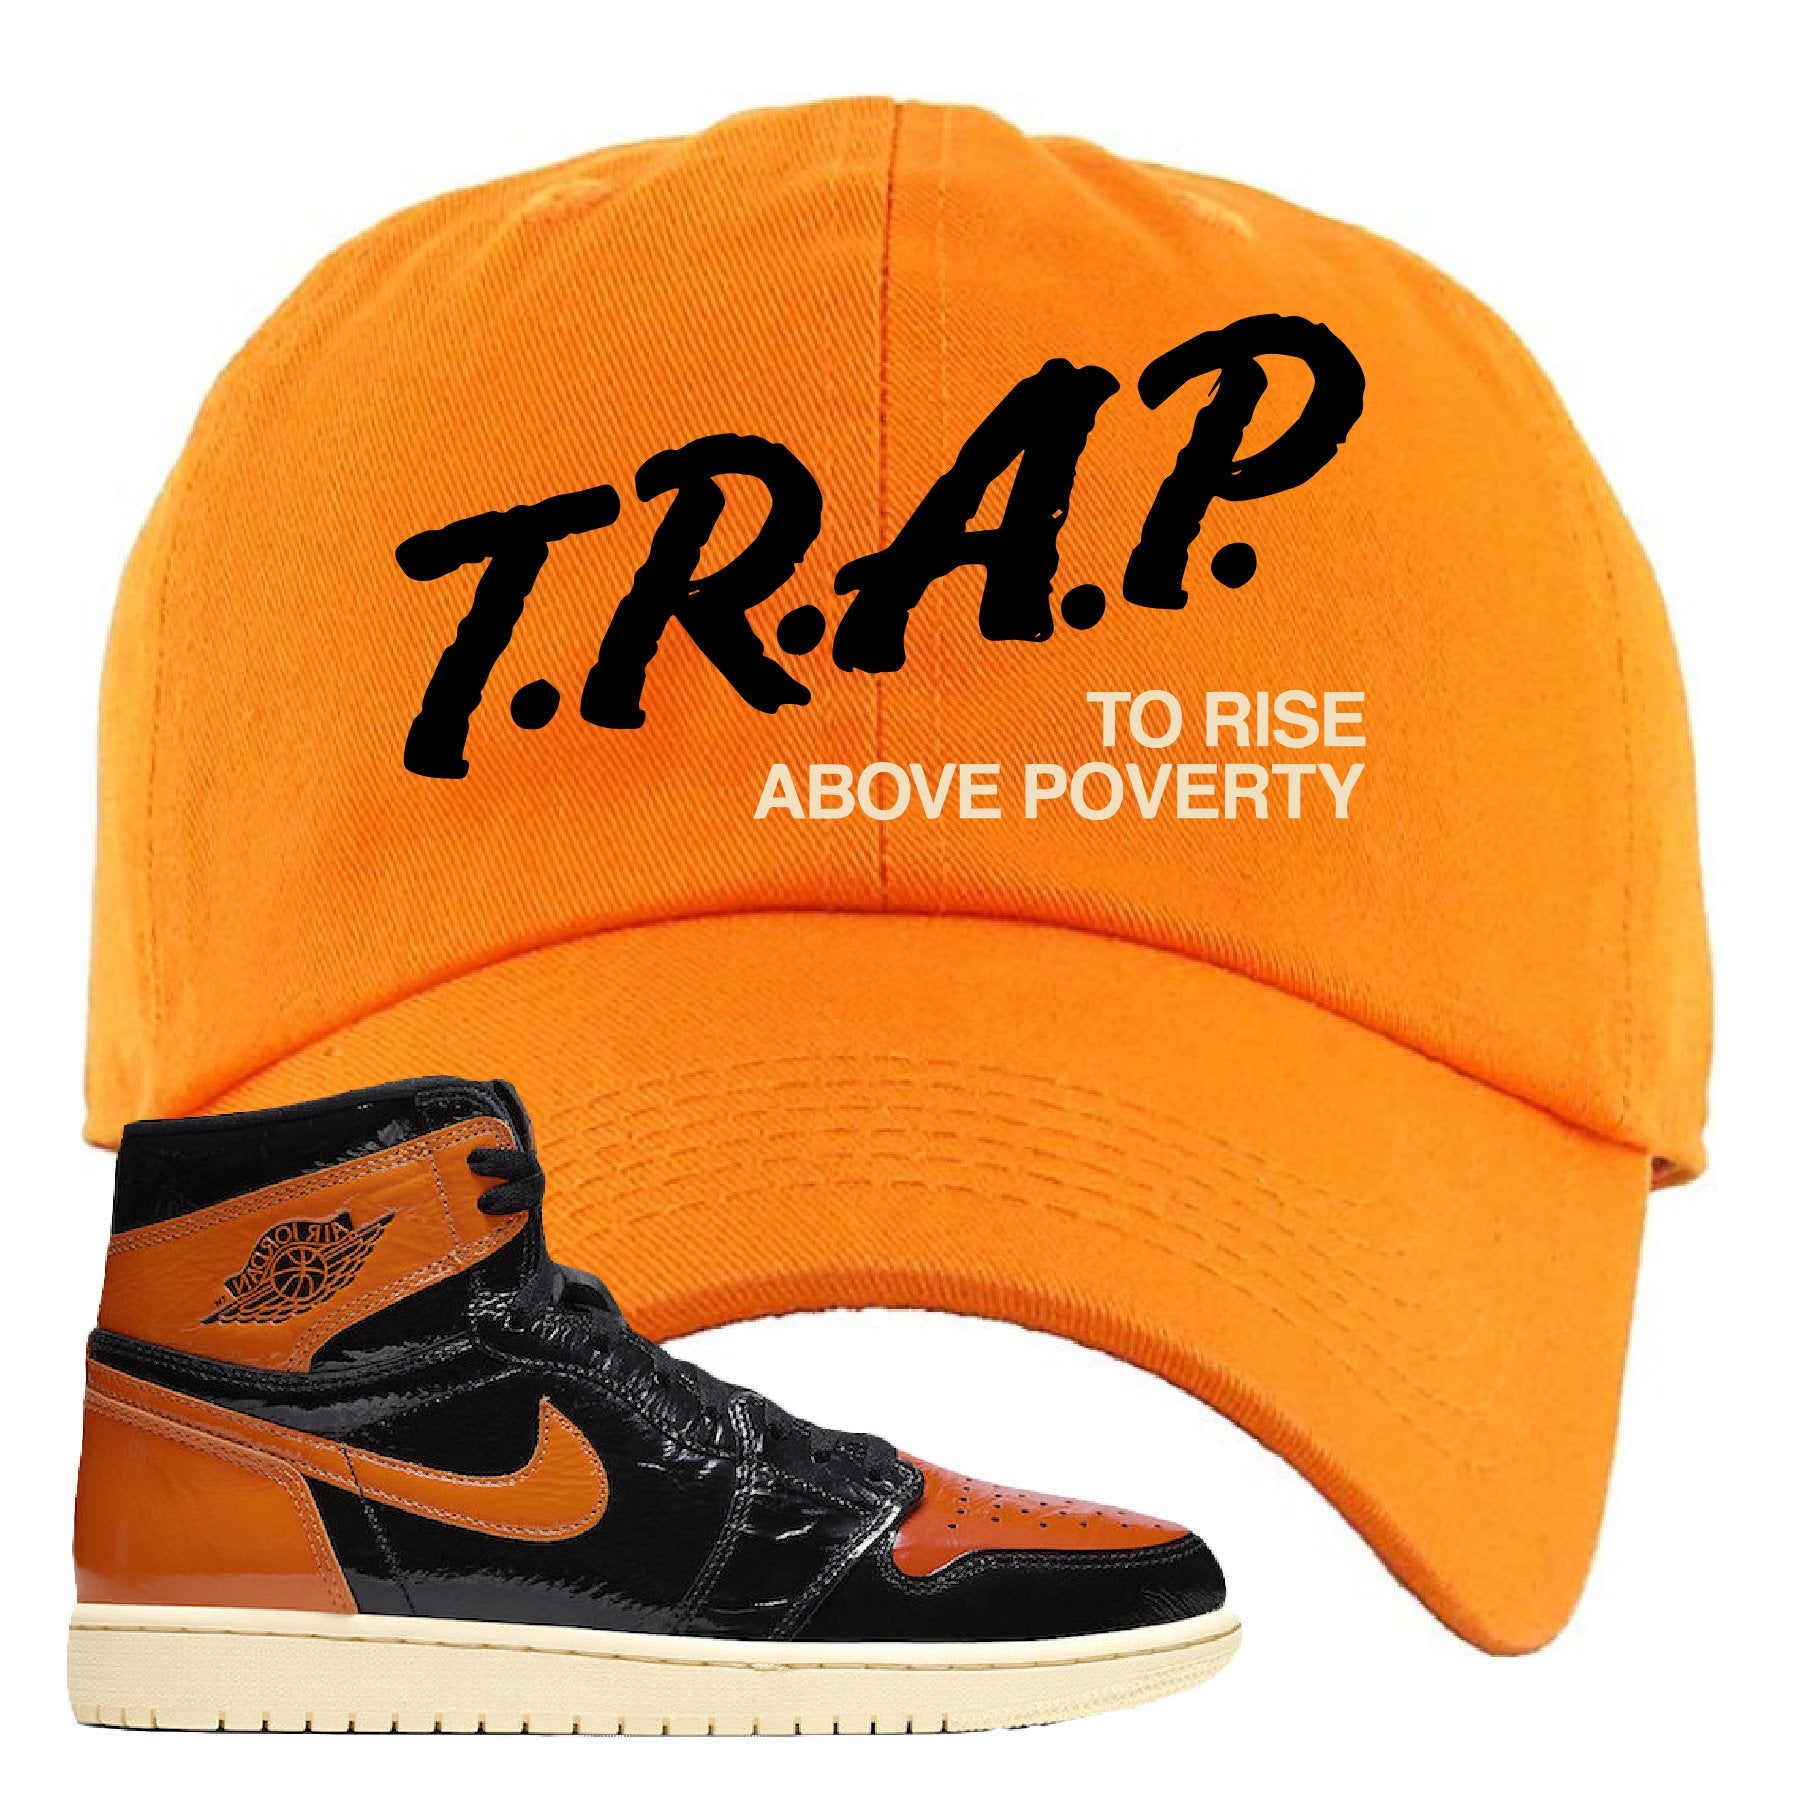 Jordan 1 Shattered Backboard Trap to Rise Above Poverty Orange Sneaker Hook Up Dad Hat